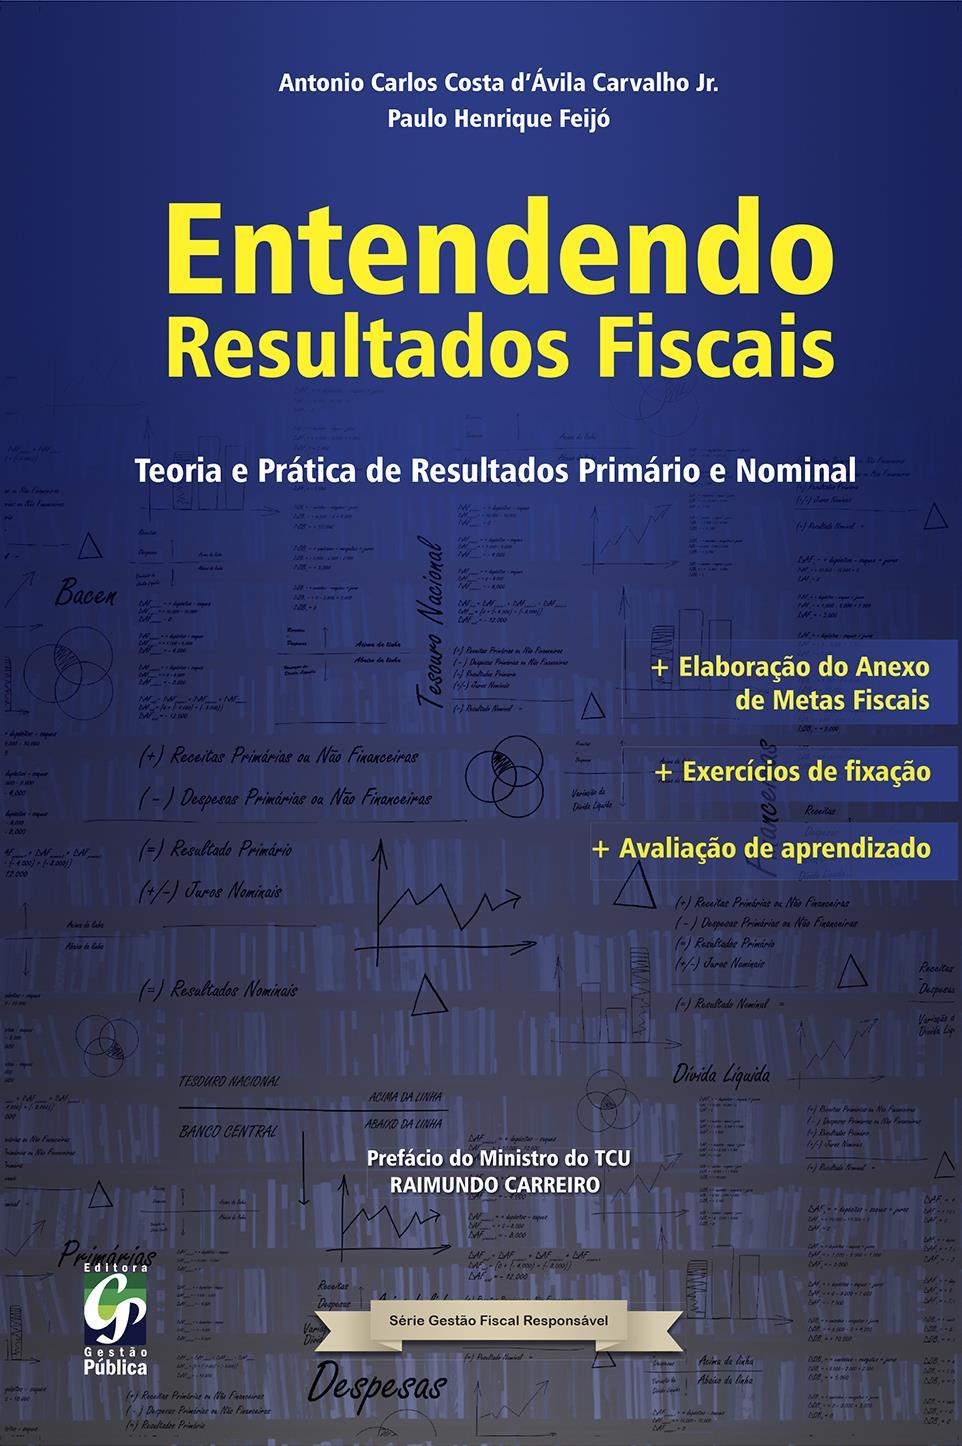 Entendendo Resultados Fiscais Teoria e Prática de Resultados Primário e Nominal Elaboração do Anexo de Metas Fiscais Antonio